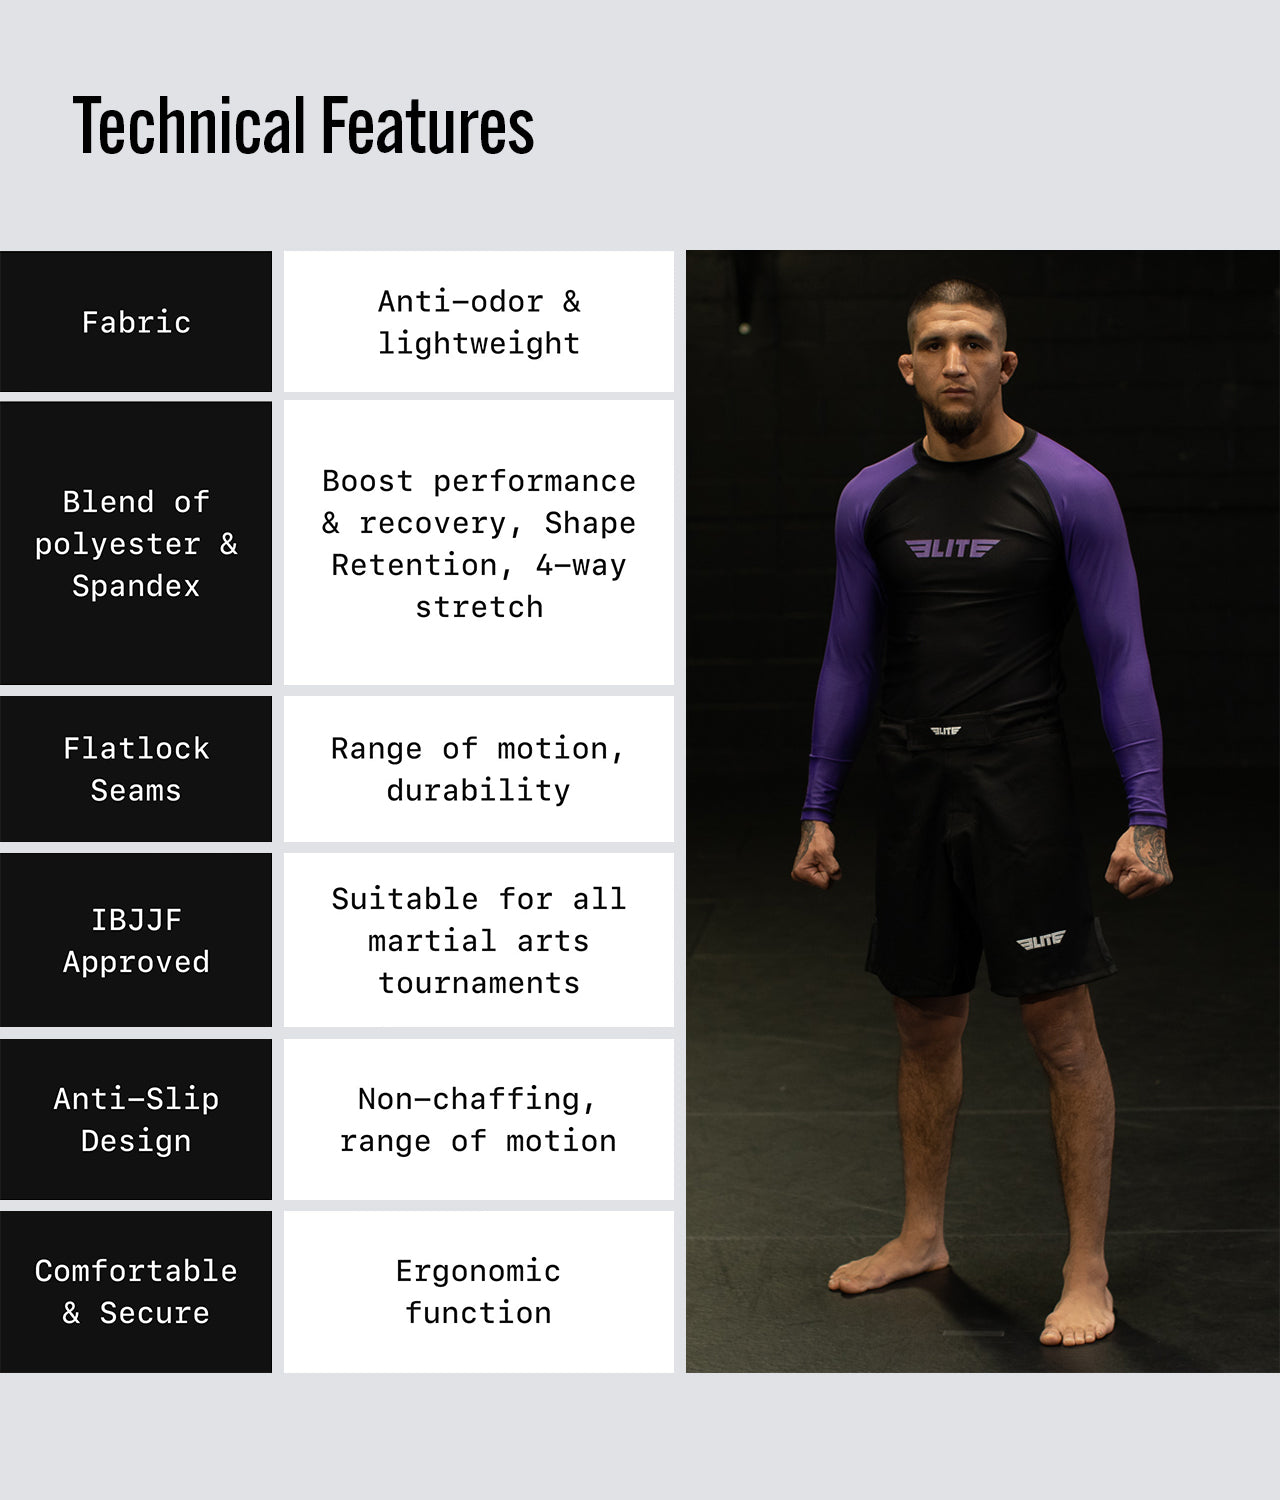 Men's Standard Purple Long Sleeve MMA Rash Guard